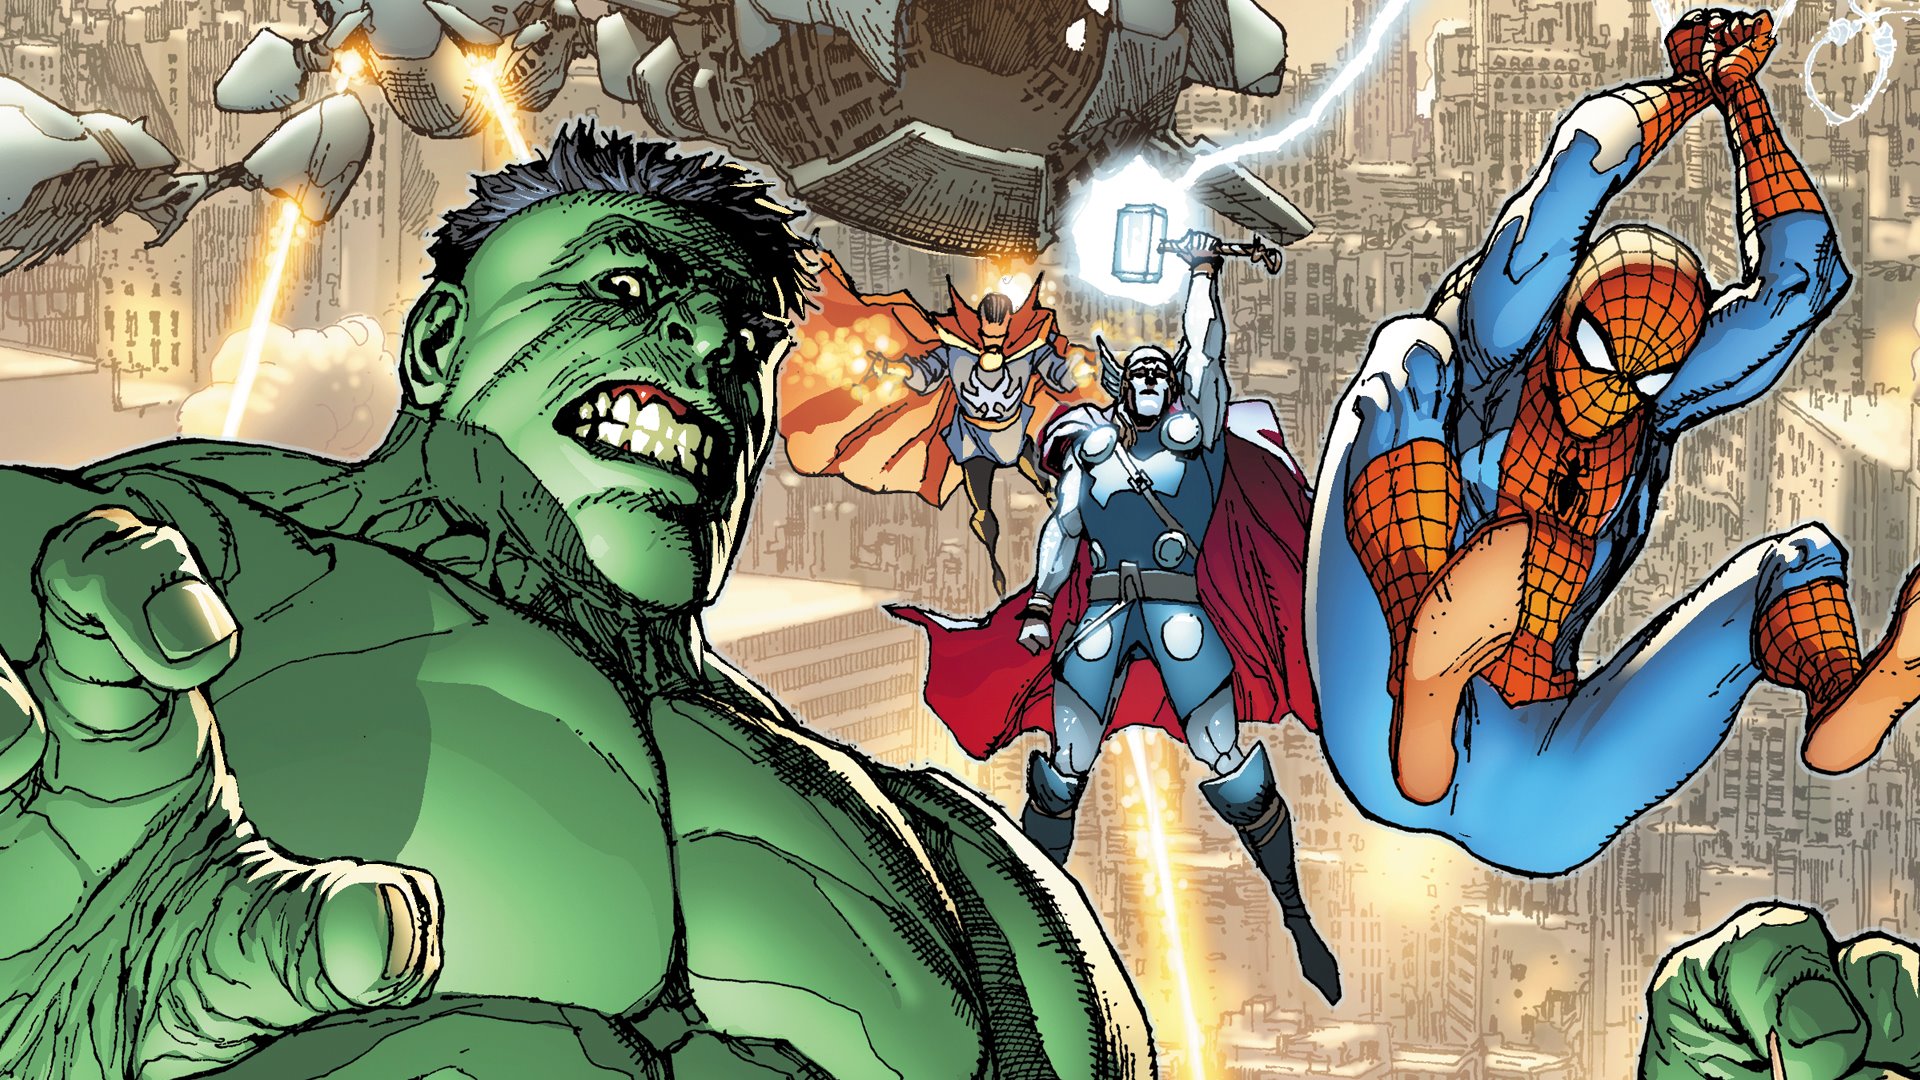 The Avengers: Battle for Earth